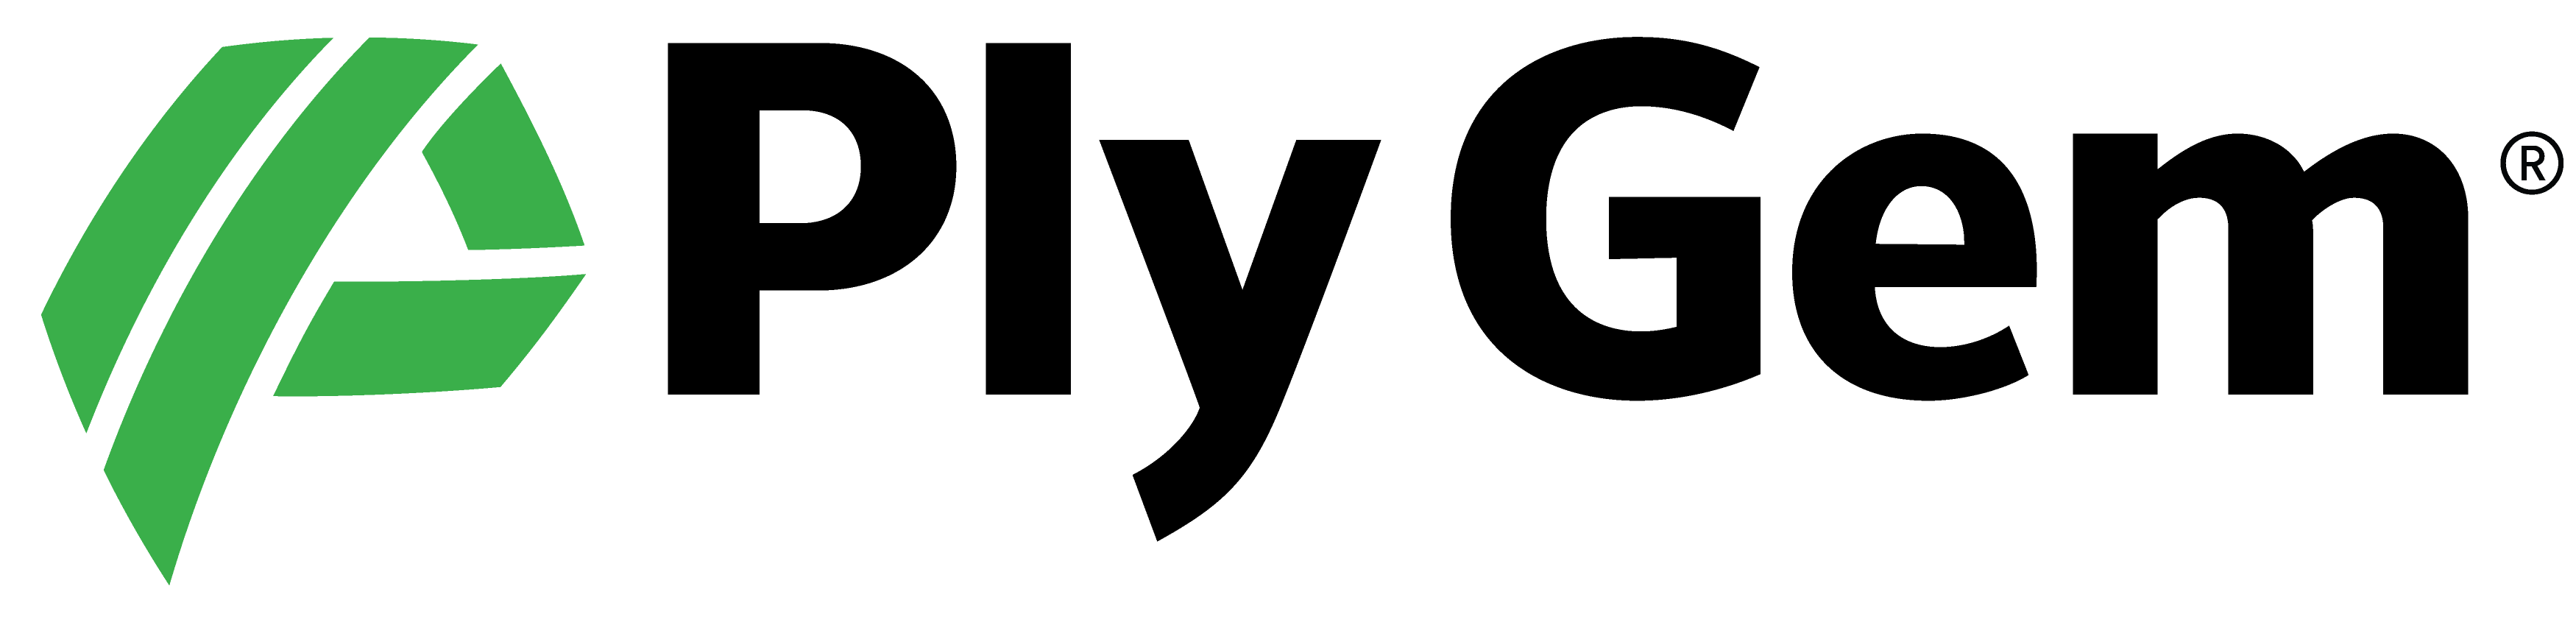 Ply-Gem-Logo